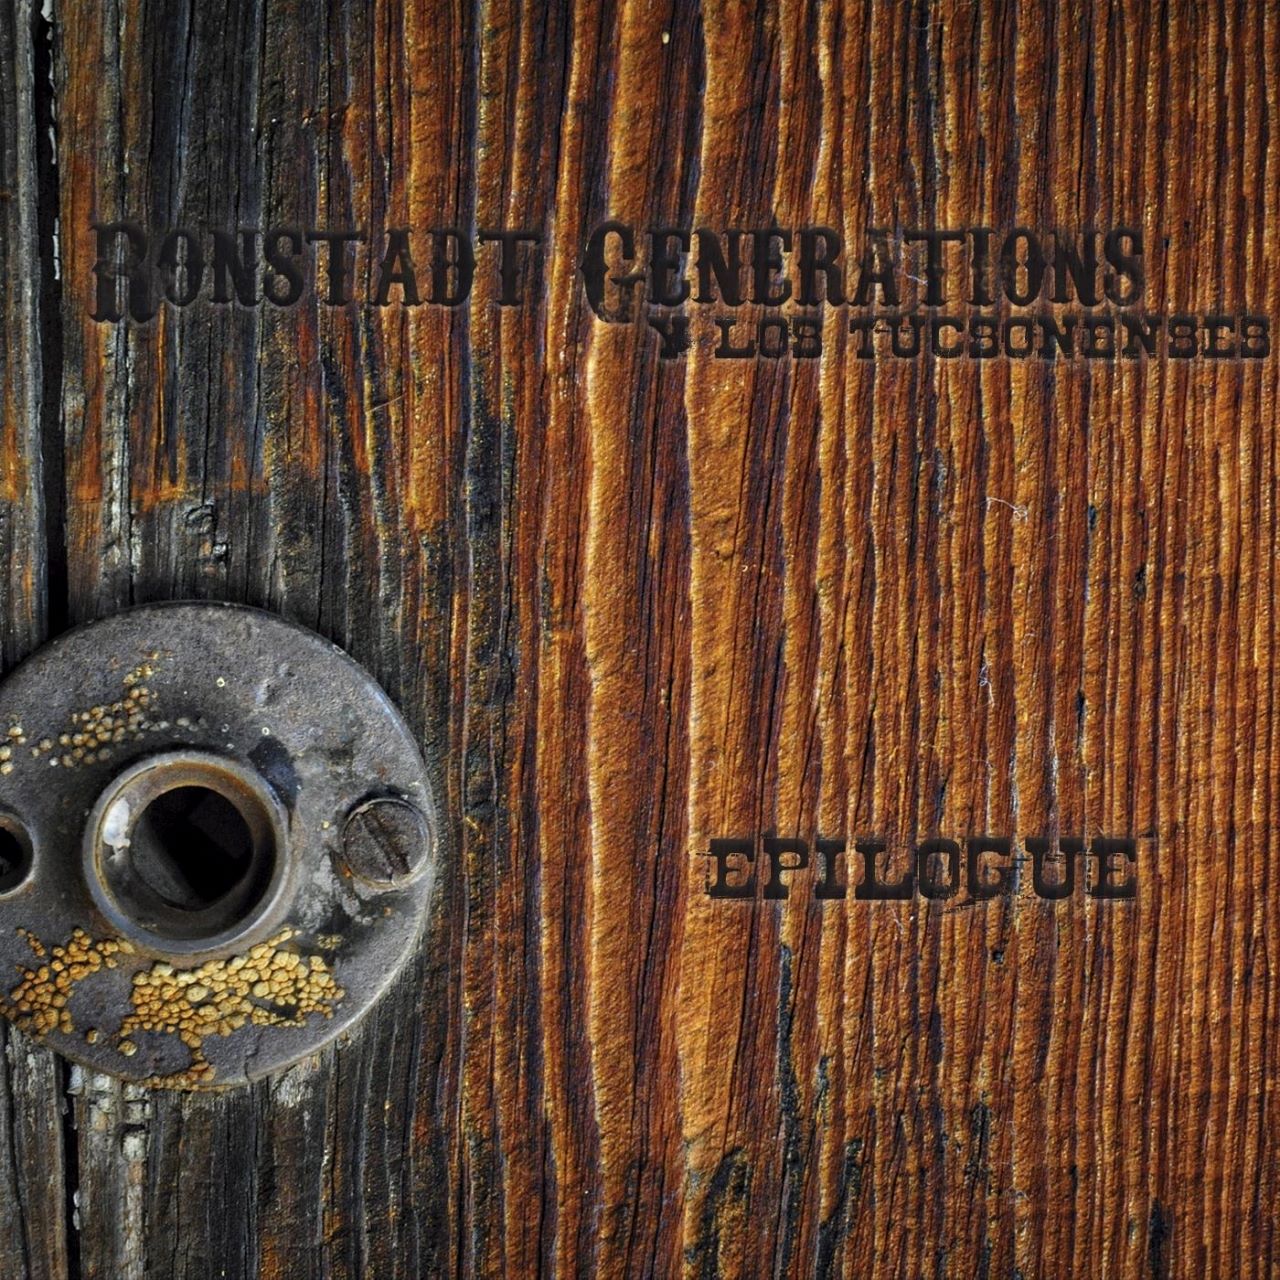 Ronstadt Generations Y Los Tucsonenses - Epilogue cover album